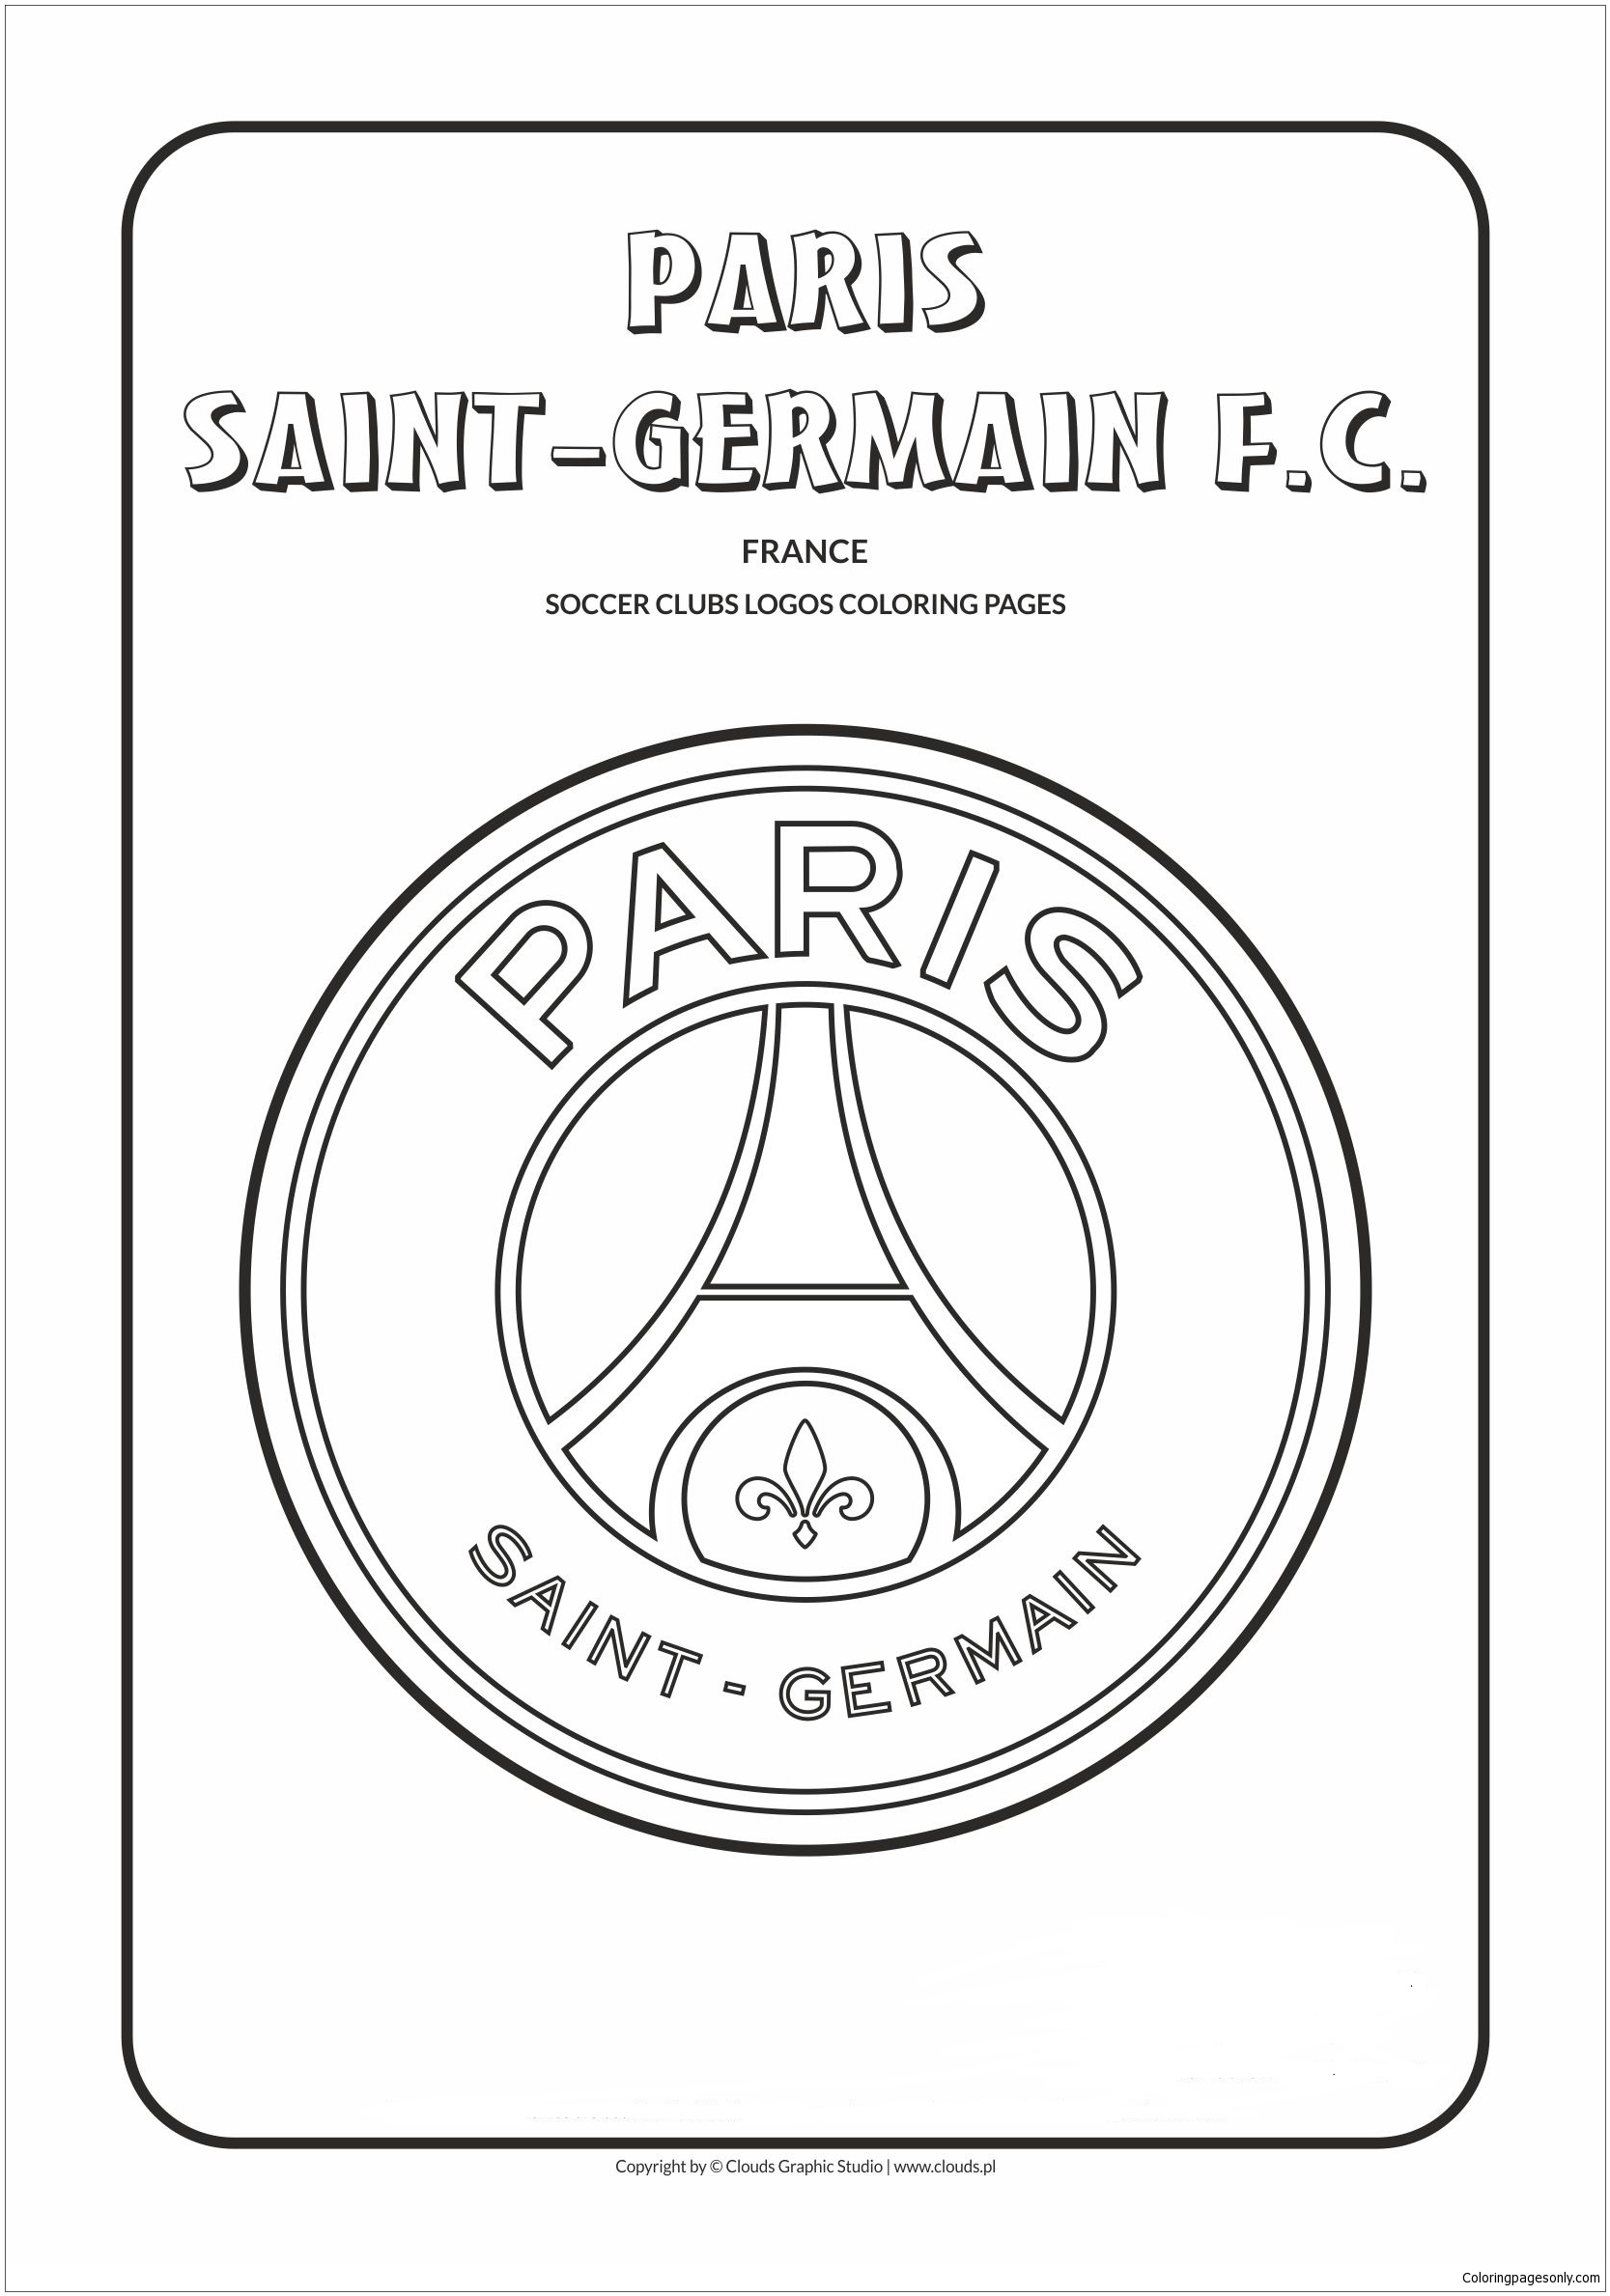 Paris Saint-Germain F.C Coloring Pages